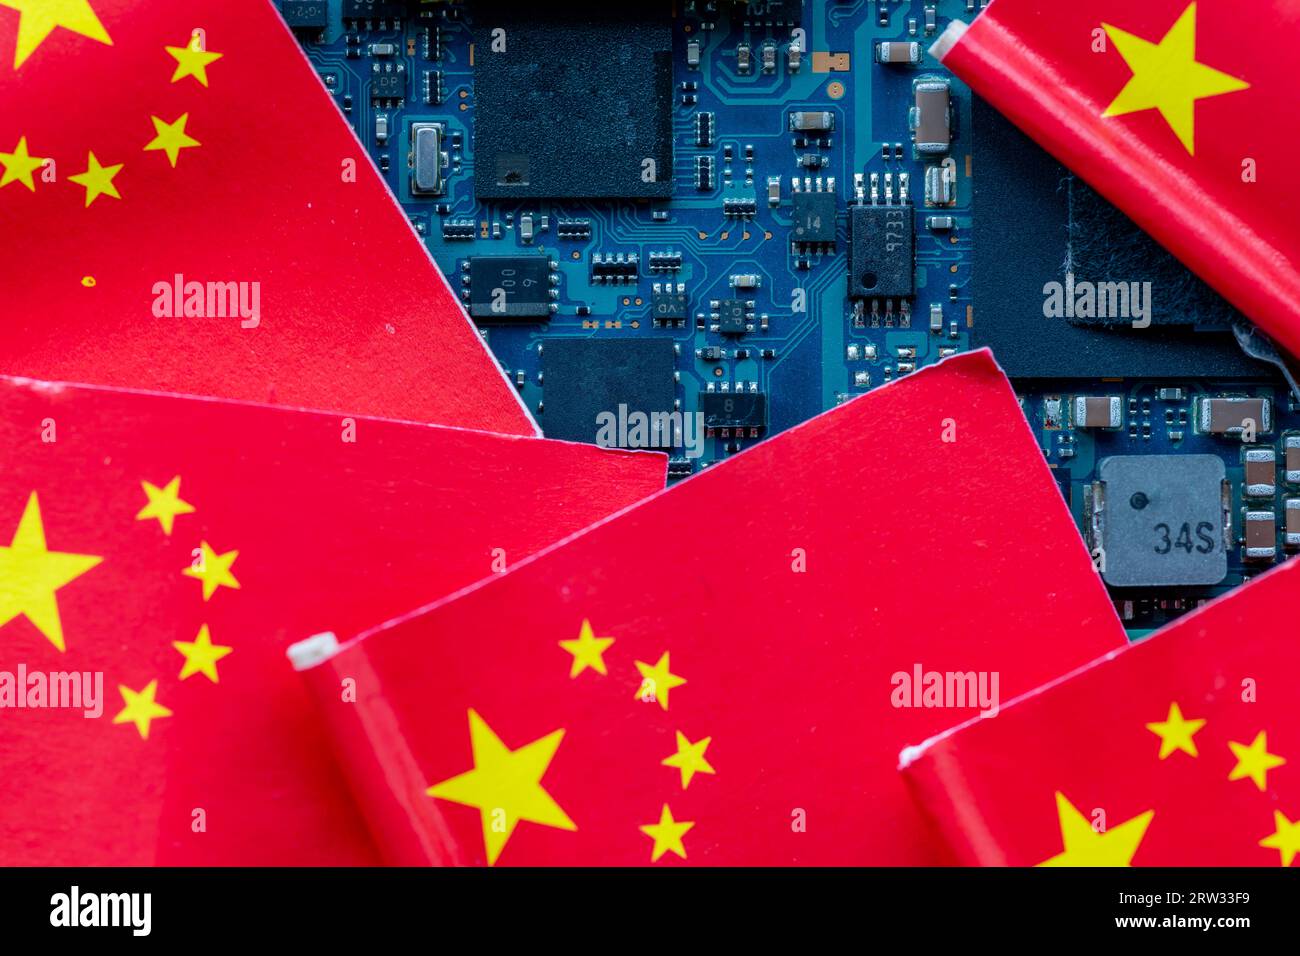 Un concept de technologie chinoise avec des drapeaux chinois sur le dessus d'une carte de circuit imprimé semi-conducteur. Banque D'Images